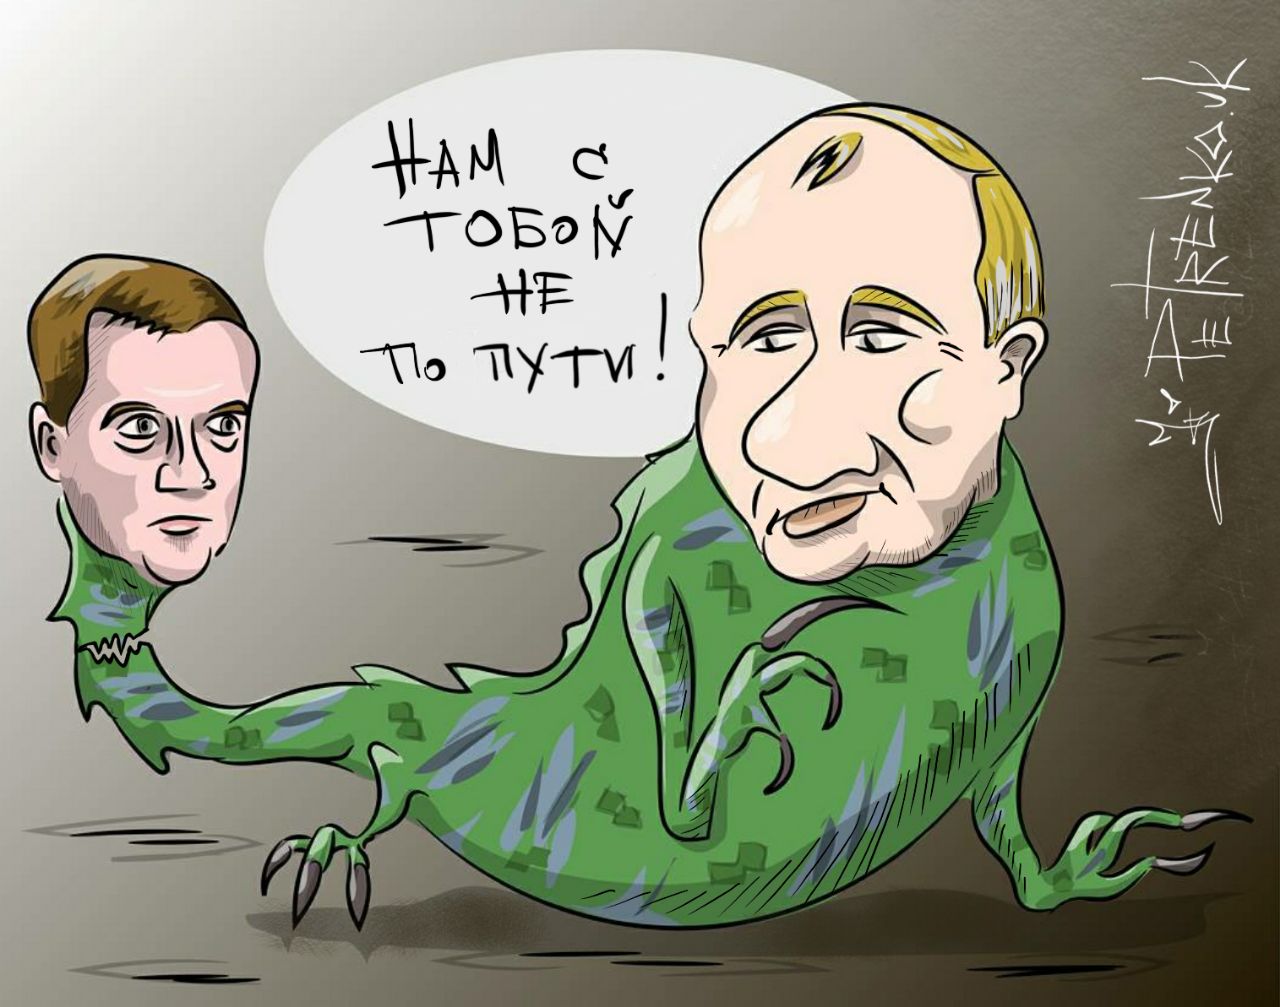 Двуглавый монстр: Путин и Медведев стали героями забавной карикатуры. ФОТО